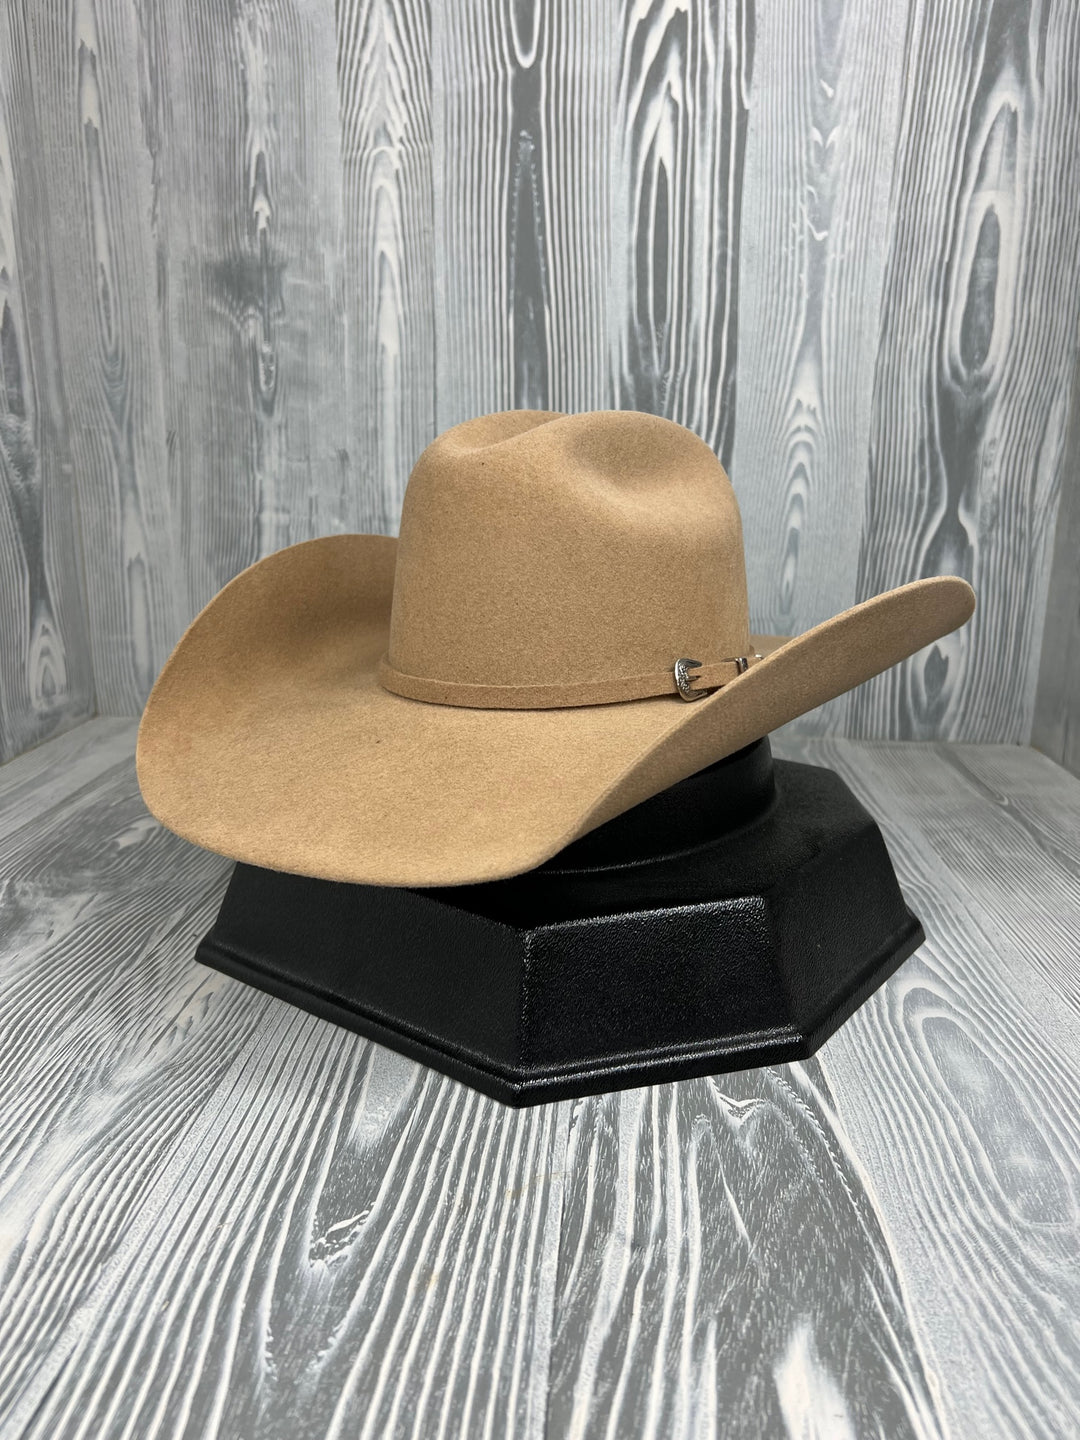 Serratelli Remington 5X Chapeau de cowboy à bord de noix de pécan 4 1/2"